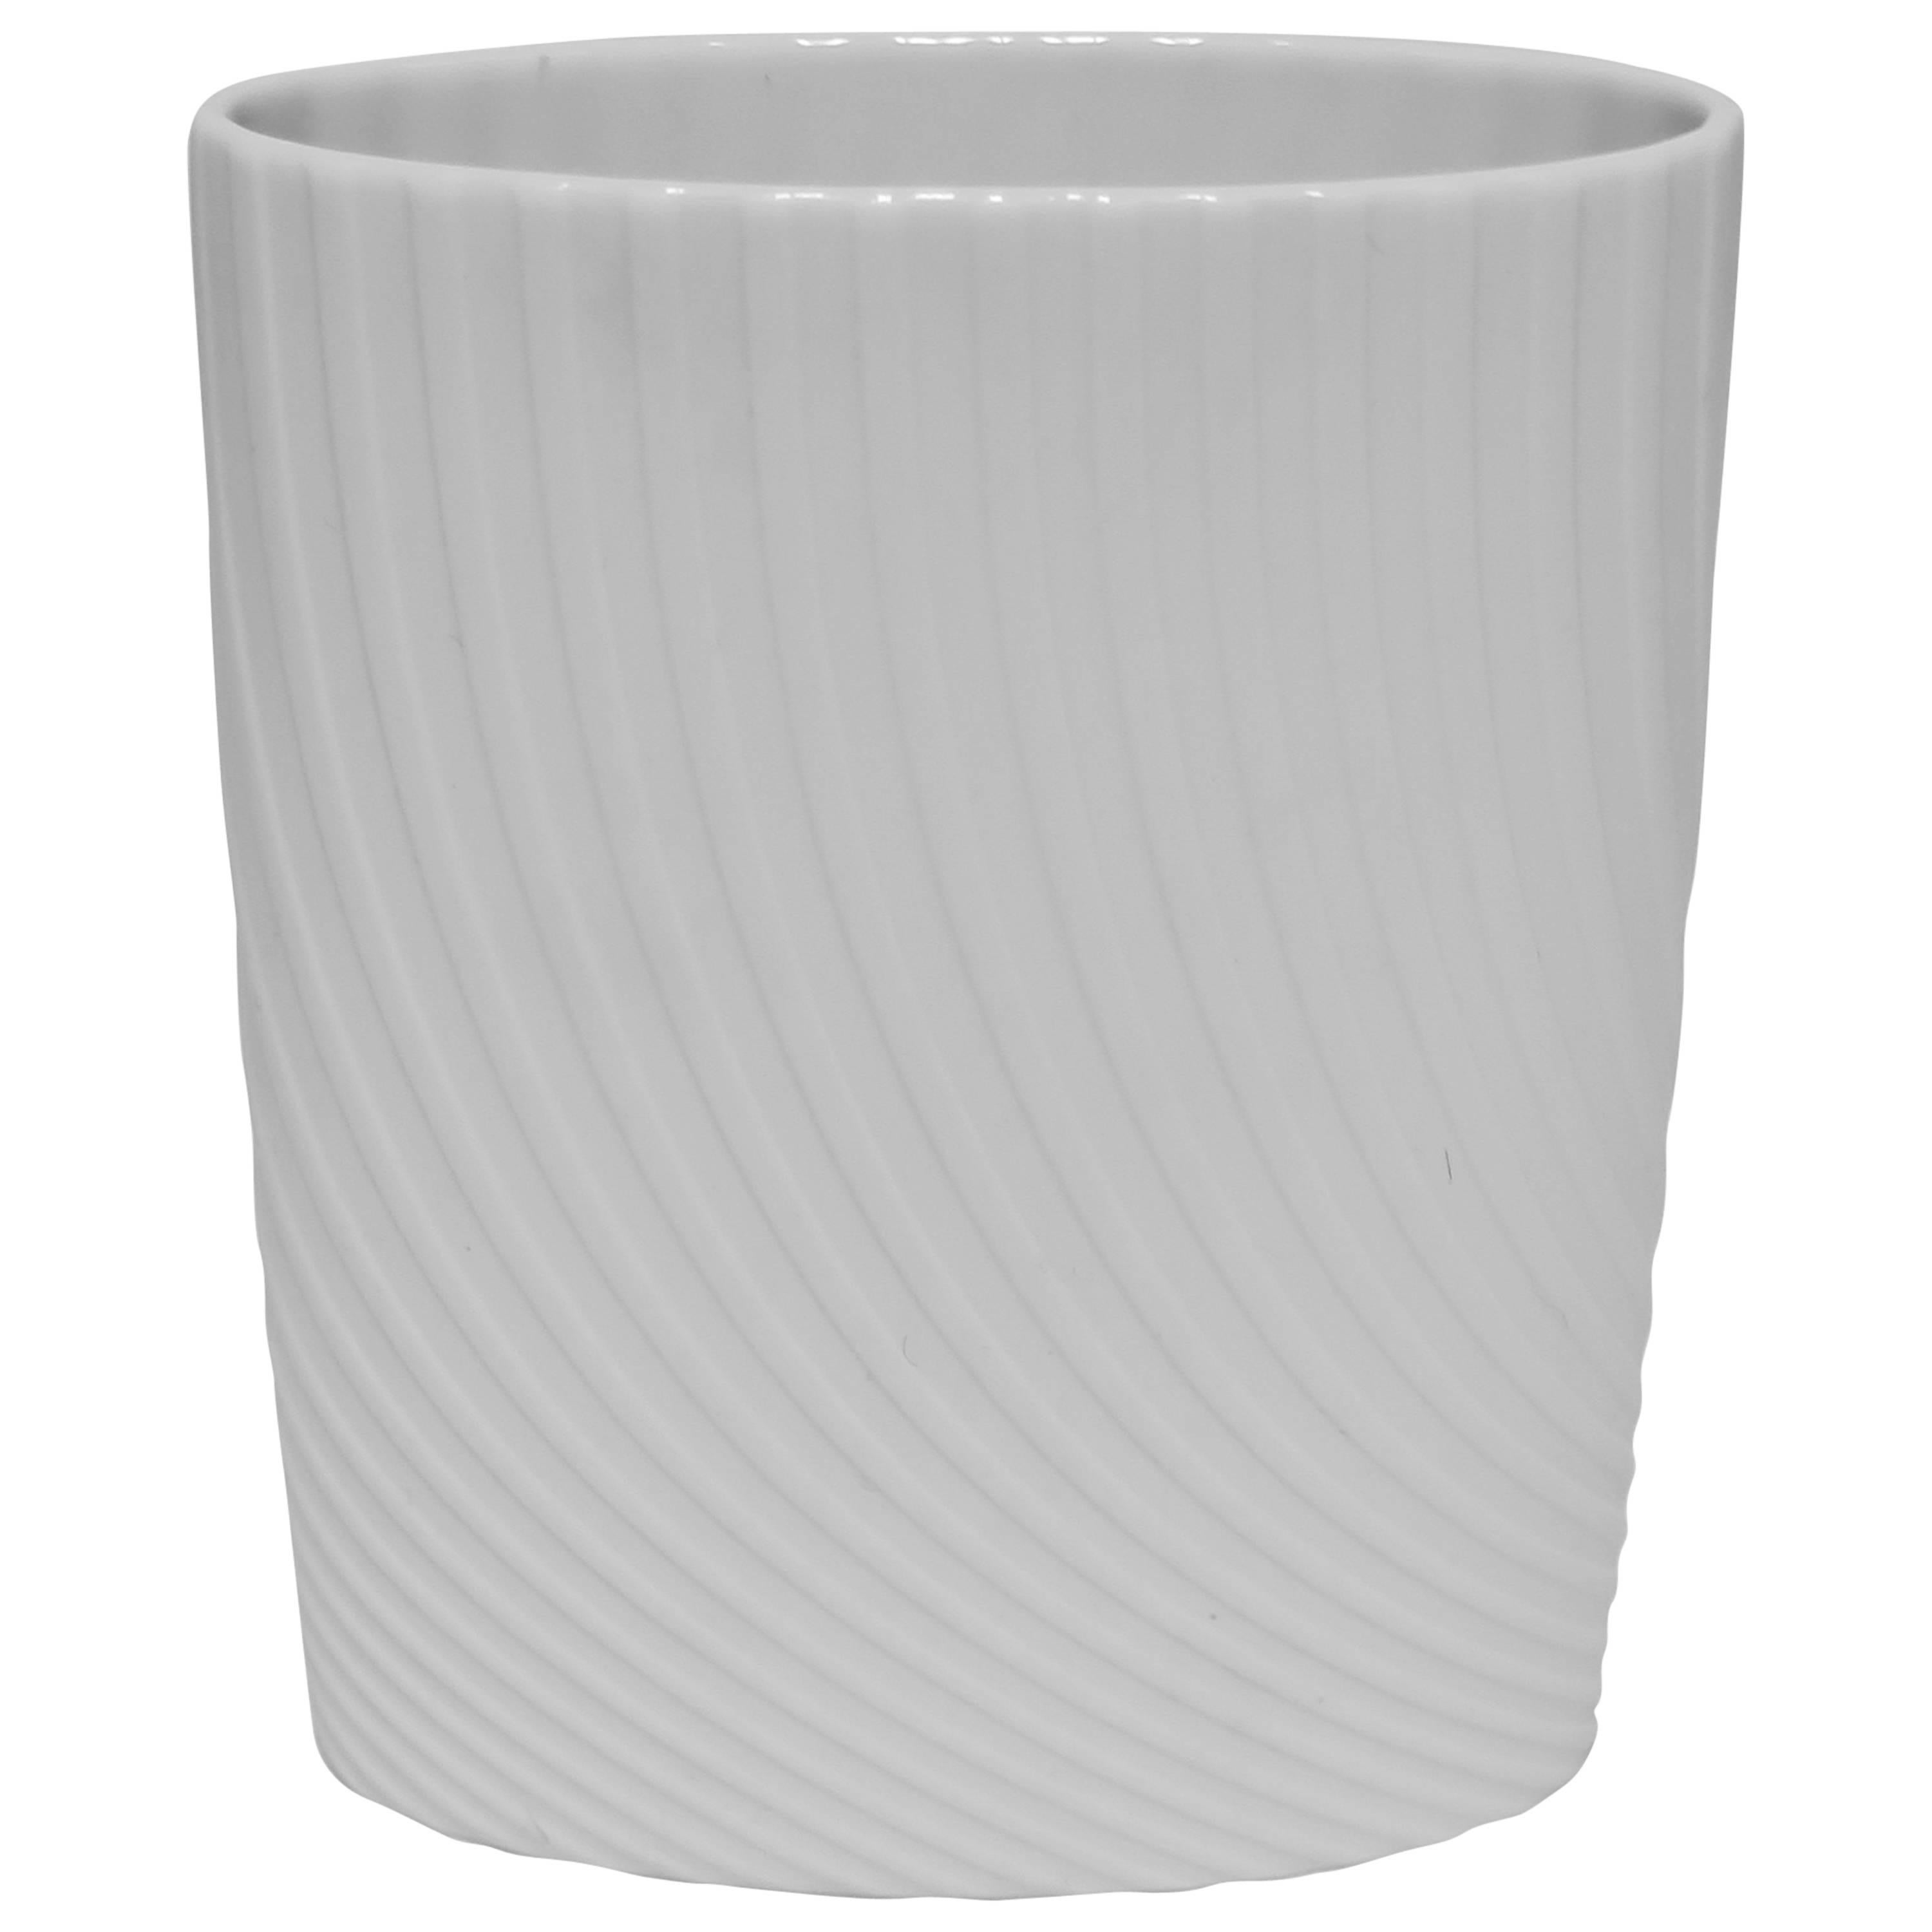 Designer-Vase aus weißem, mattem Porzellan von Rosenthal Studio-Line